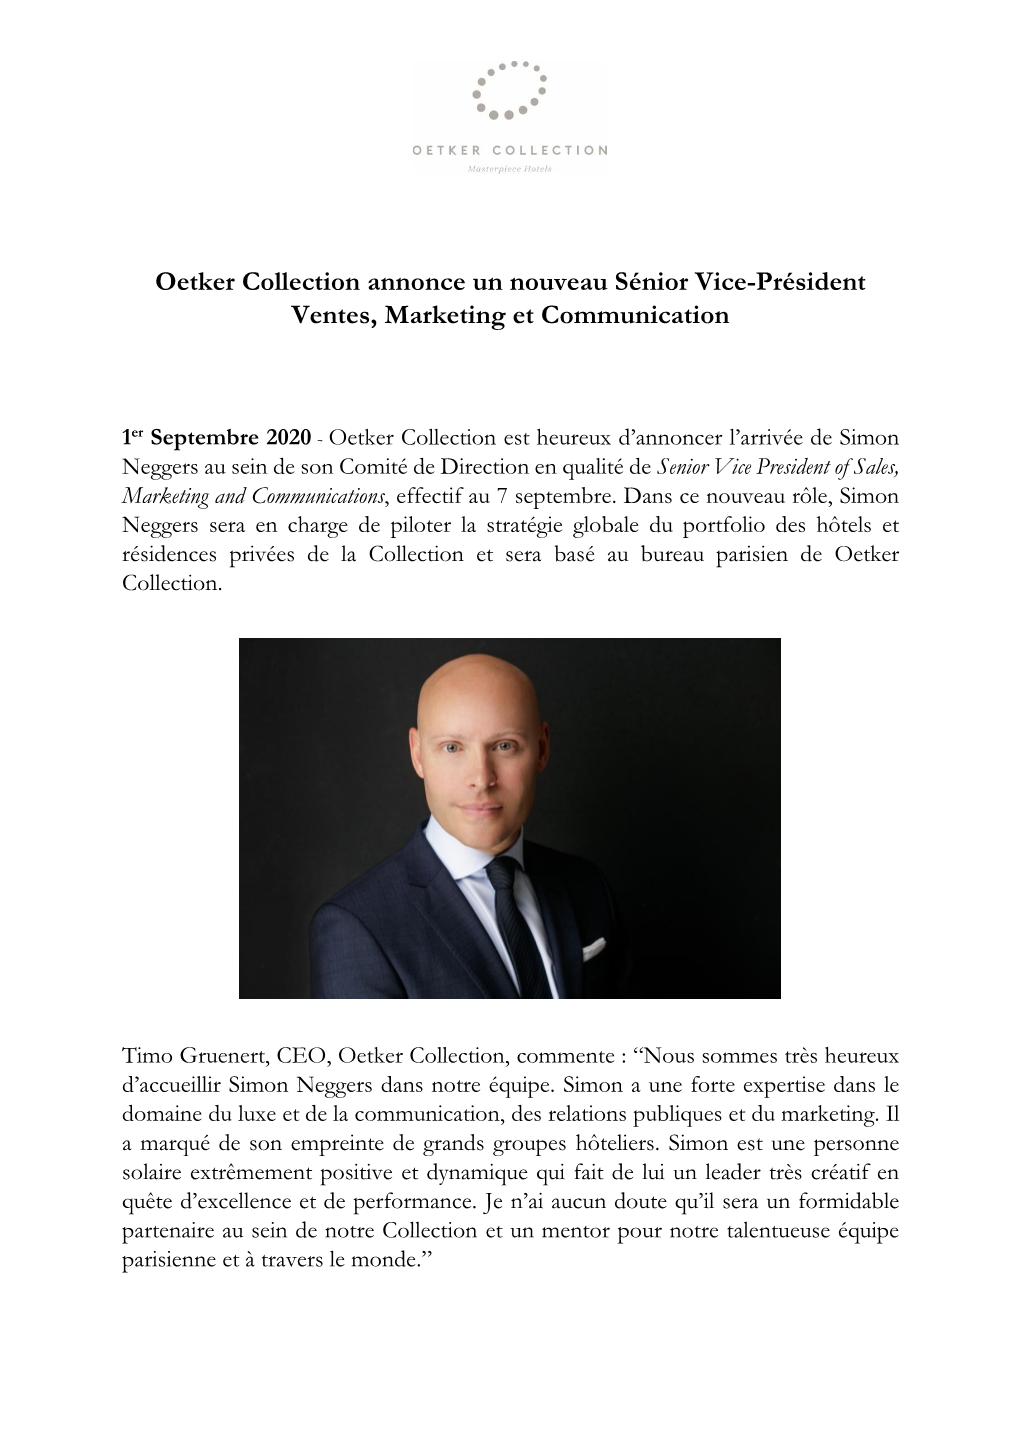 Oetker Collection Annonce Un Nouveau Sénior Vice-Président Ventes, Marketing Et Communication